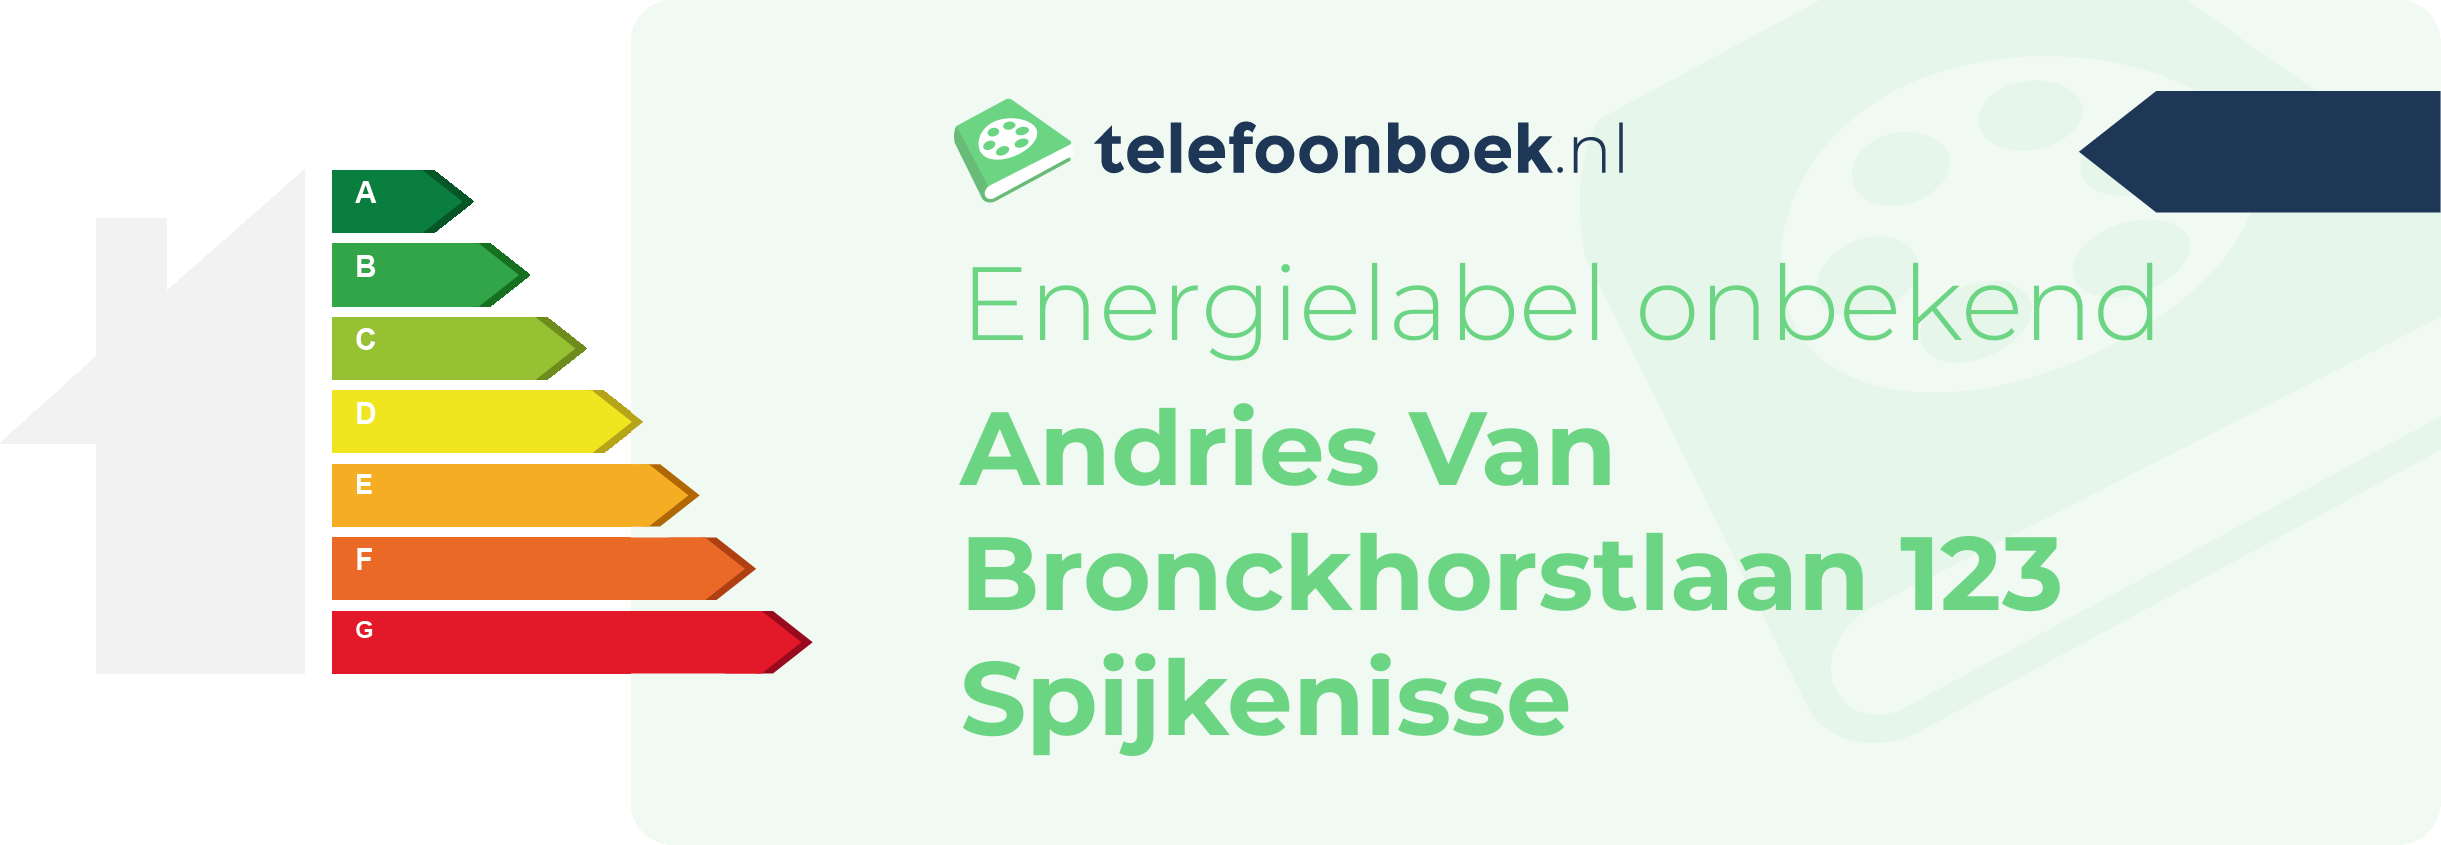 Energielabel Andries Van Bronckhorstlaan 123 Spijkenisse